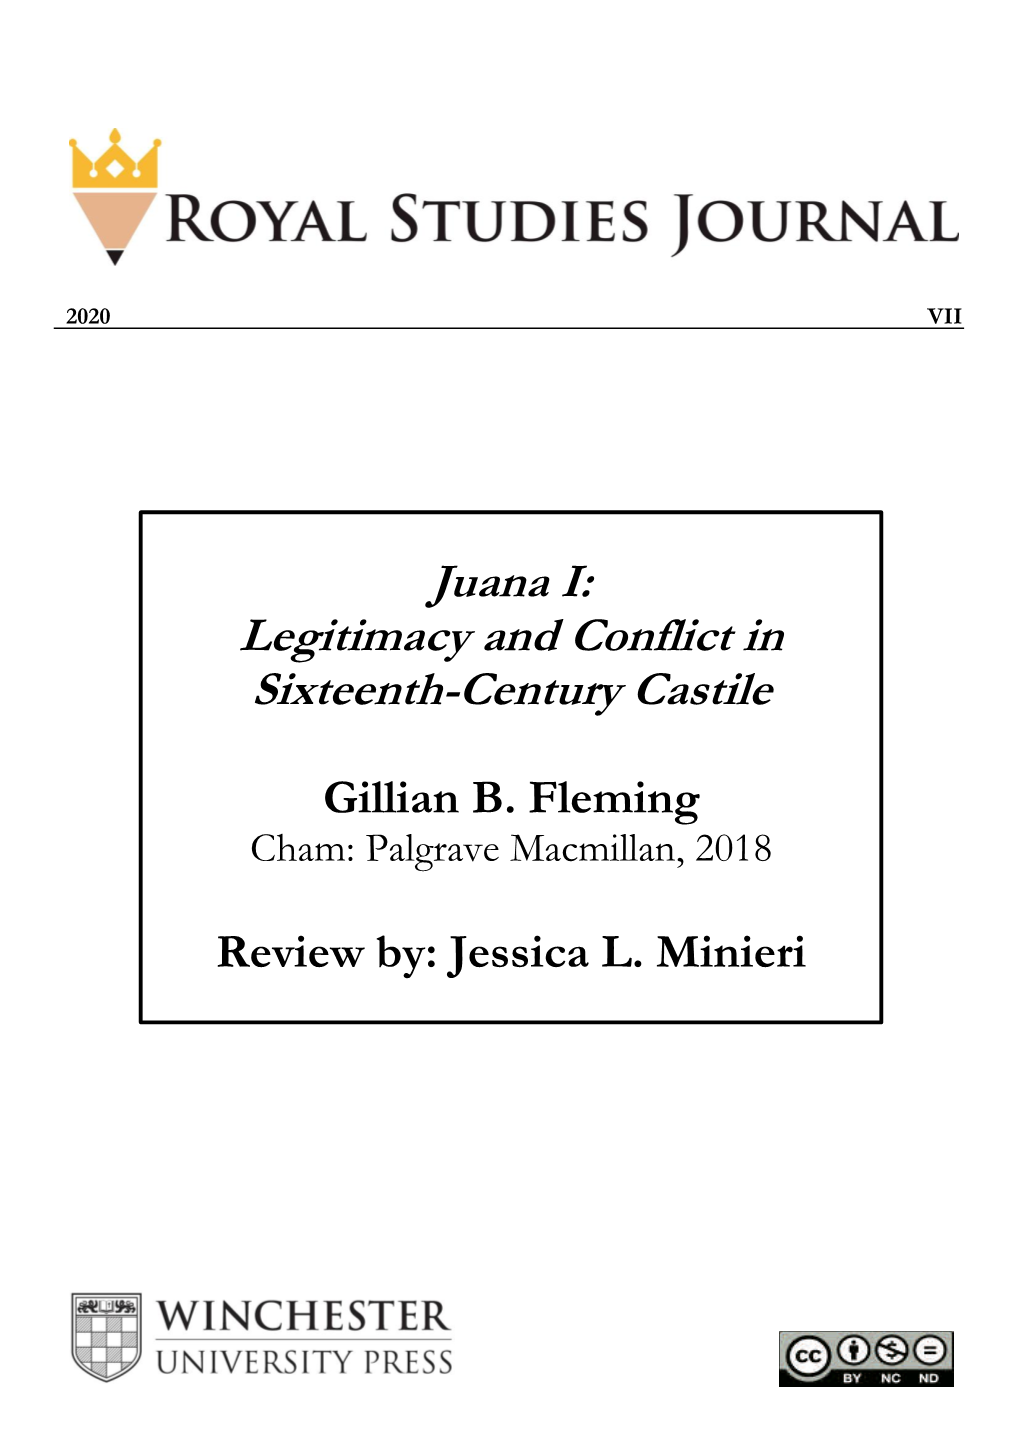 Juana I: Legitimacy and Conflict in Sixteenth-Century Castile